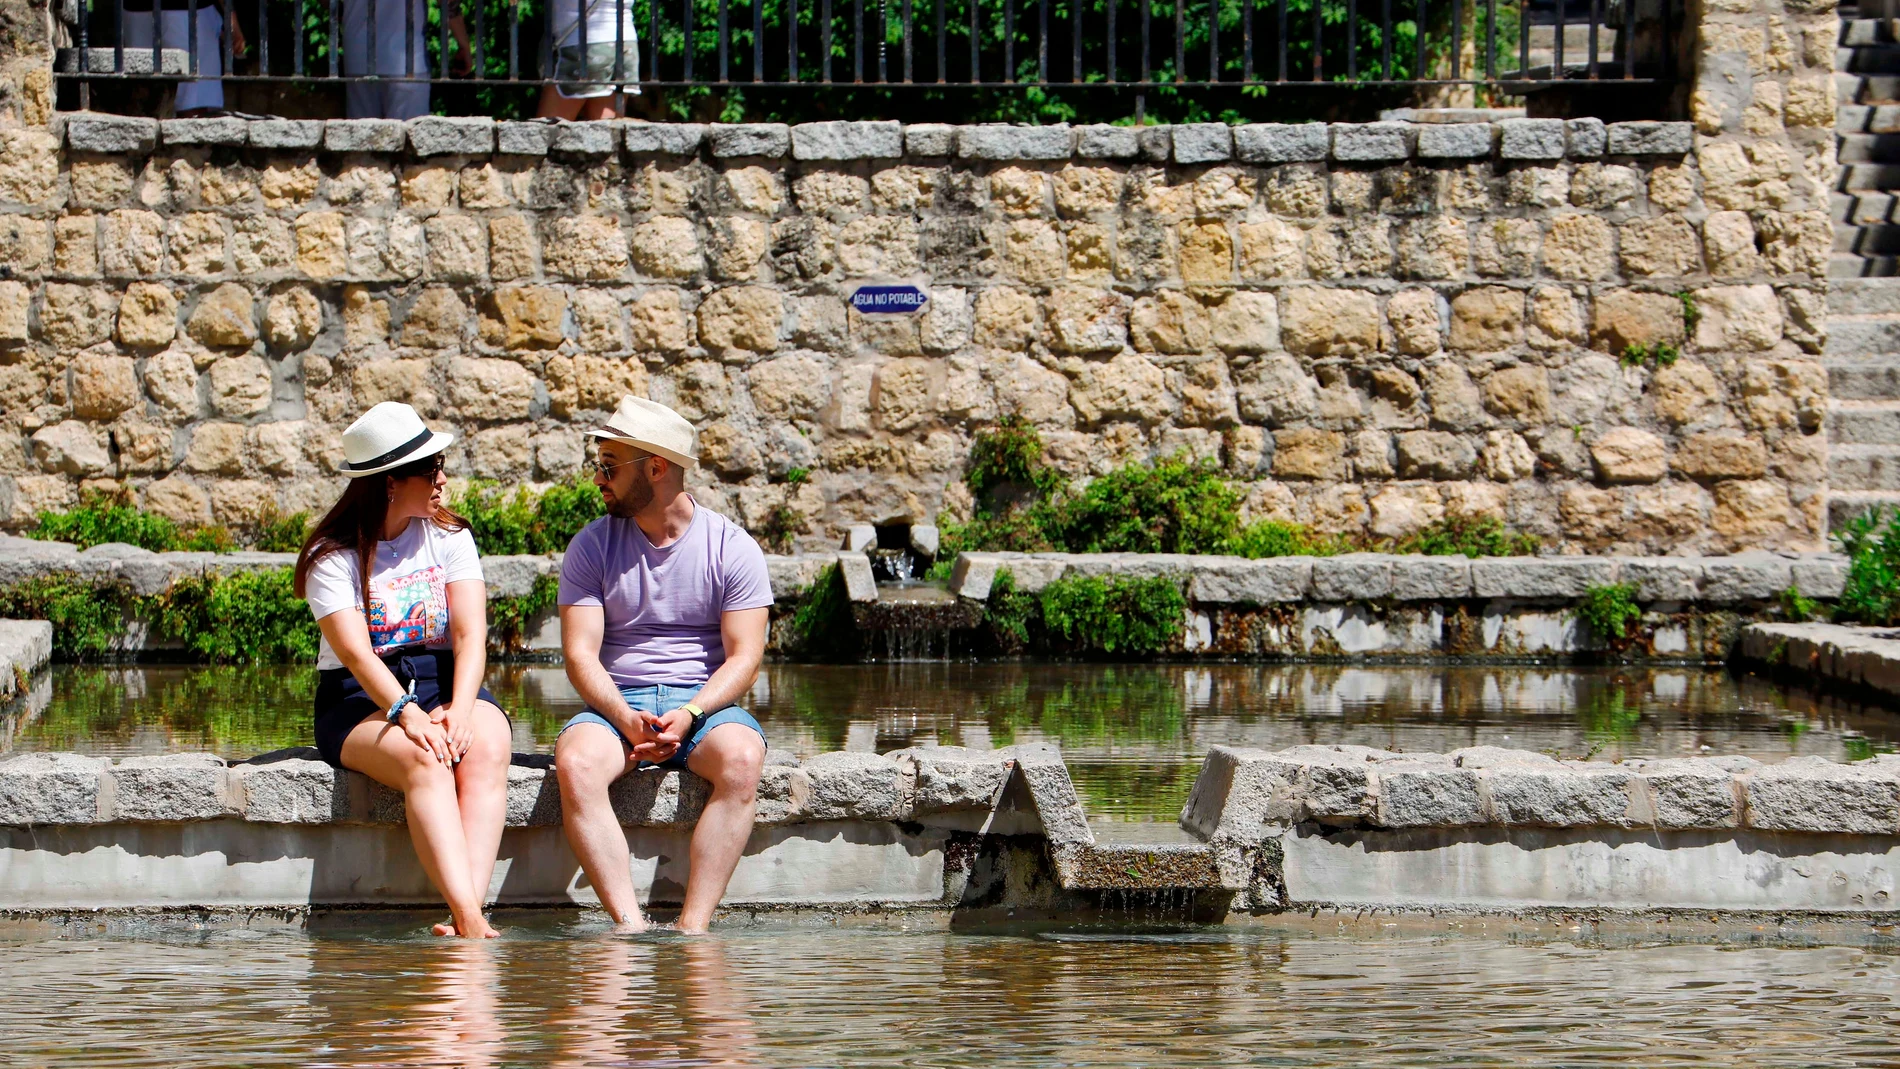 Turistas se refrescan en un estanque céntrico de Córdoba debido a las altas temperaturas registradas. EFE/Salas